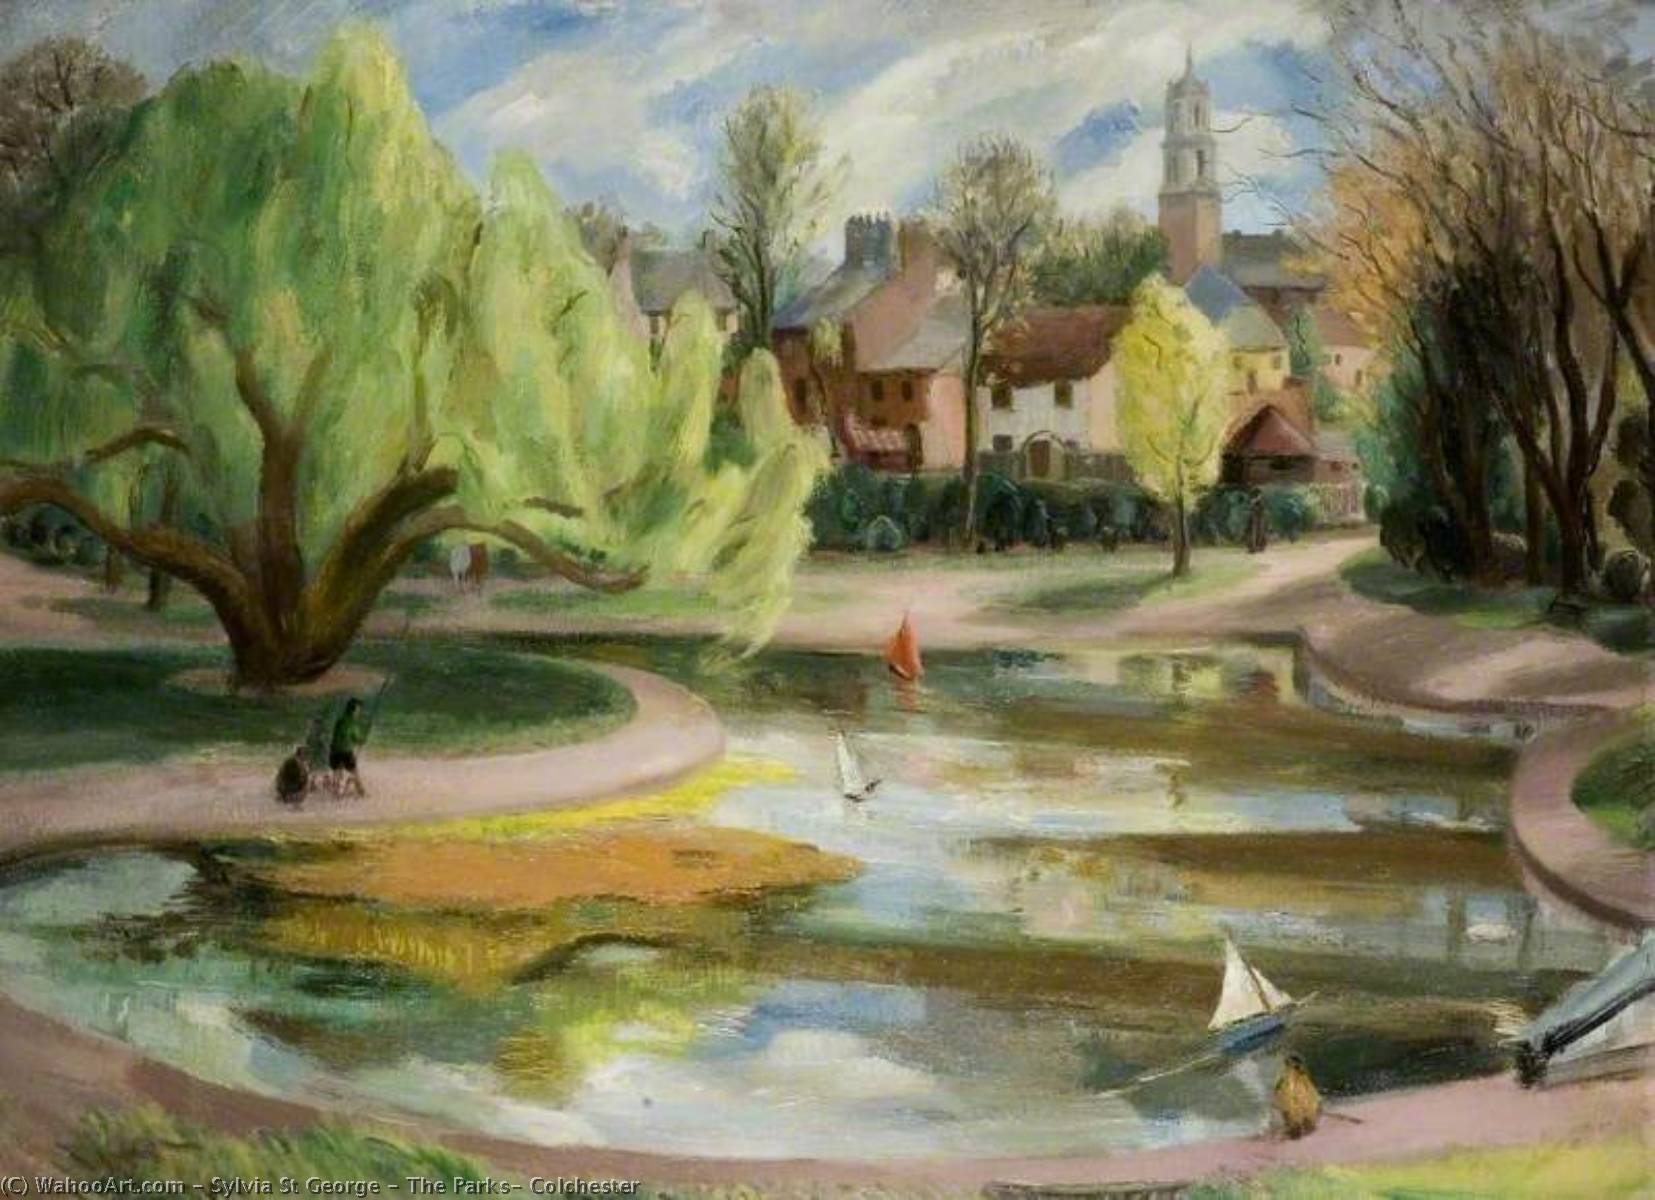 WikiOO.org - Enciclopedia of Fine Arts - Pictura, lucrări de artă Sylvia St George - The Parks, Colchester